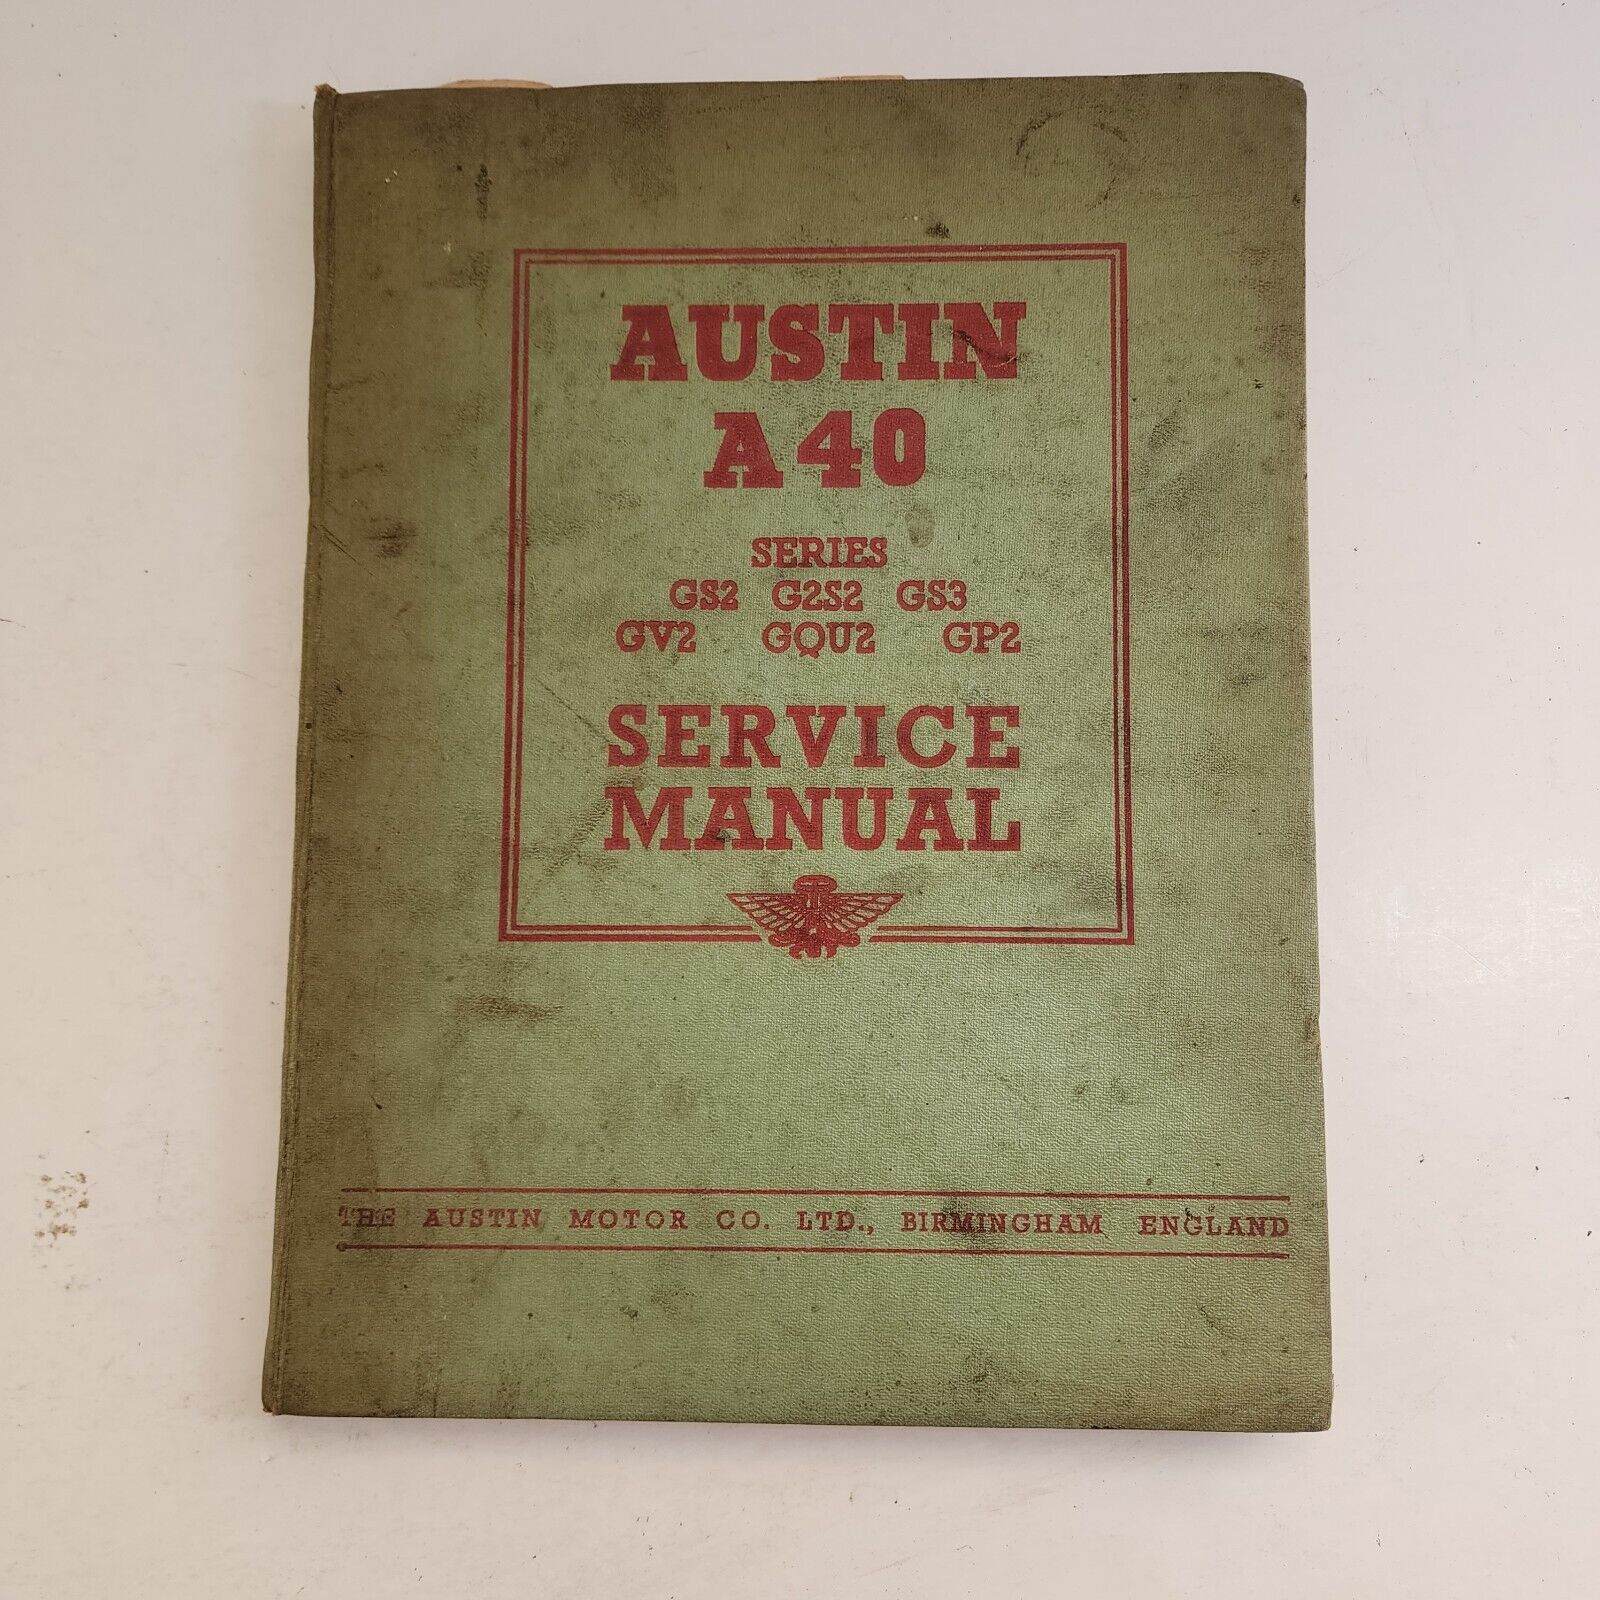 Austin A40 Series GS2 G2S2 GS3 GV2/3 GP2/3 GQU2/3 Service Manual Feb 1953